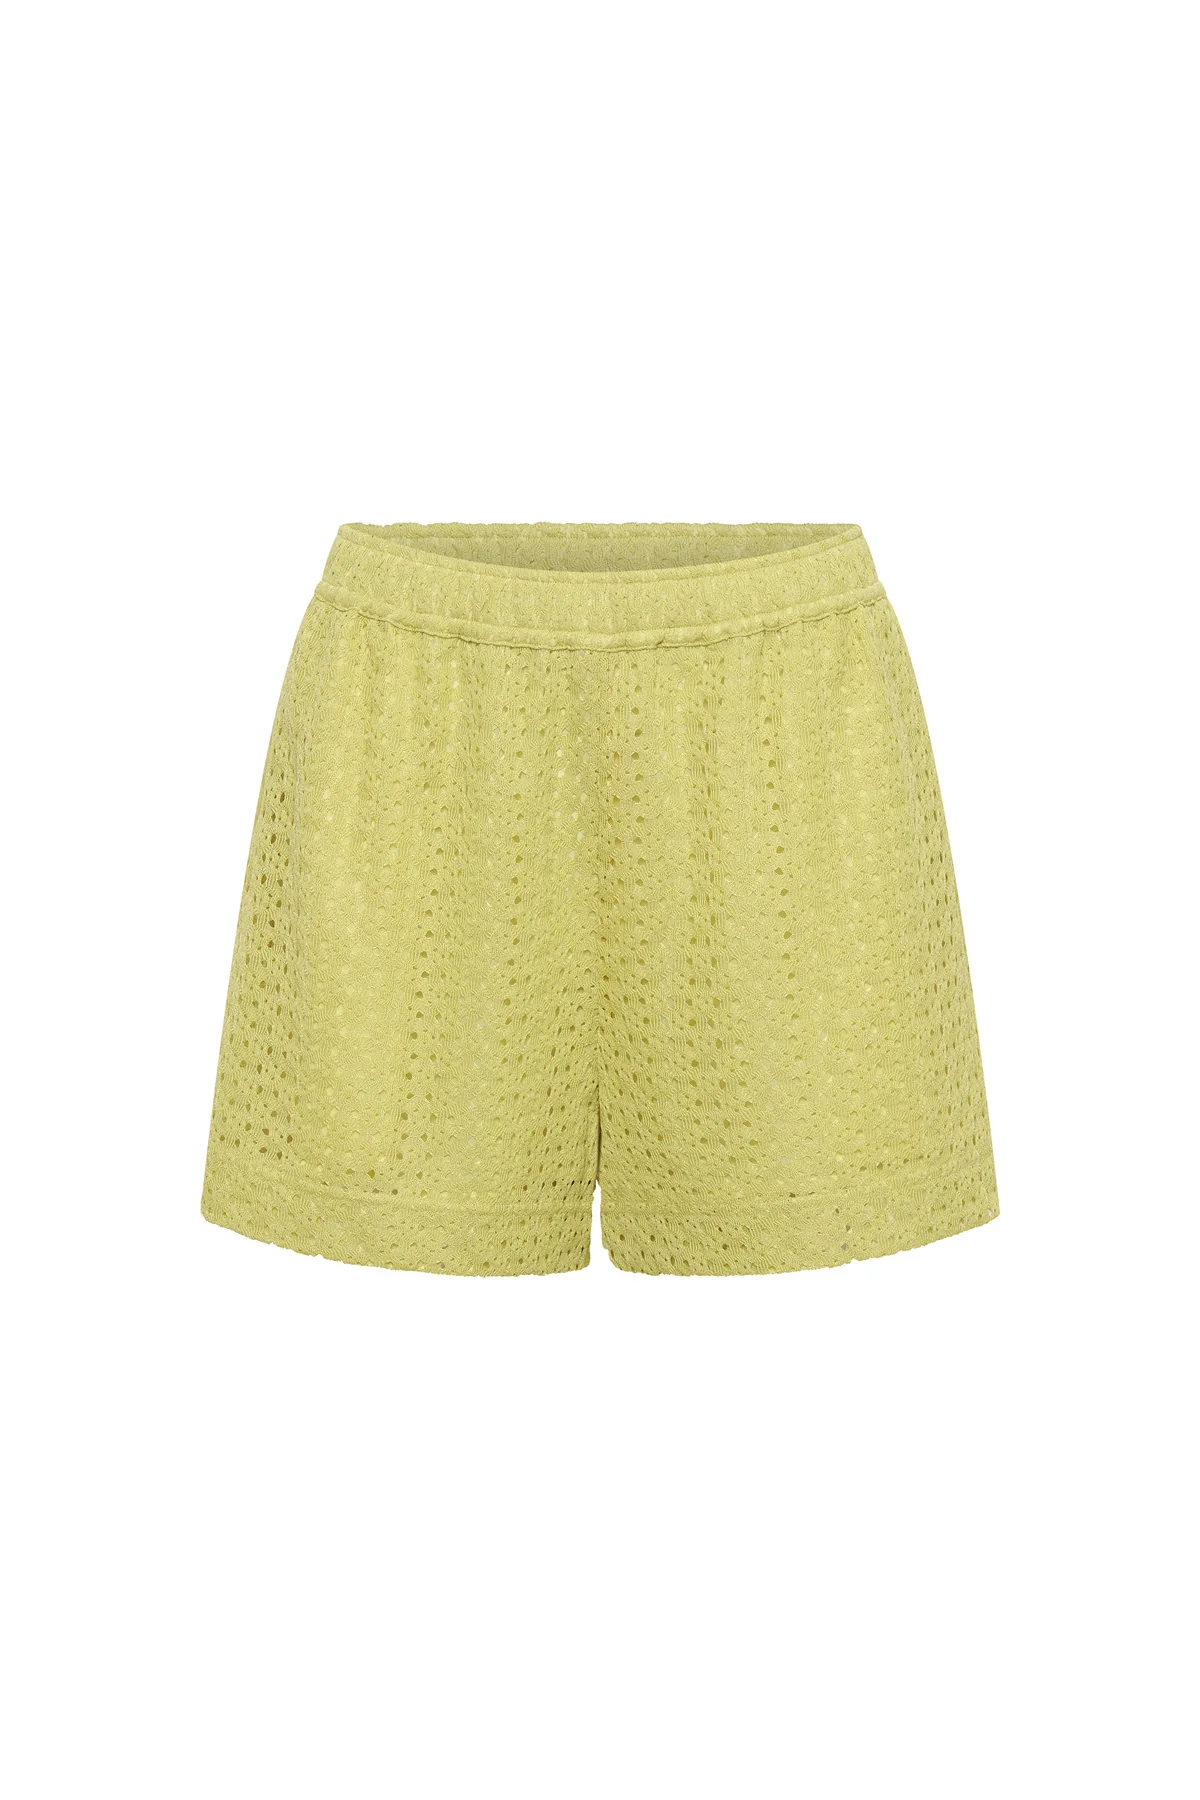 Agna Lace Shorts - Pale Lime